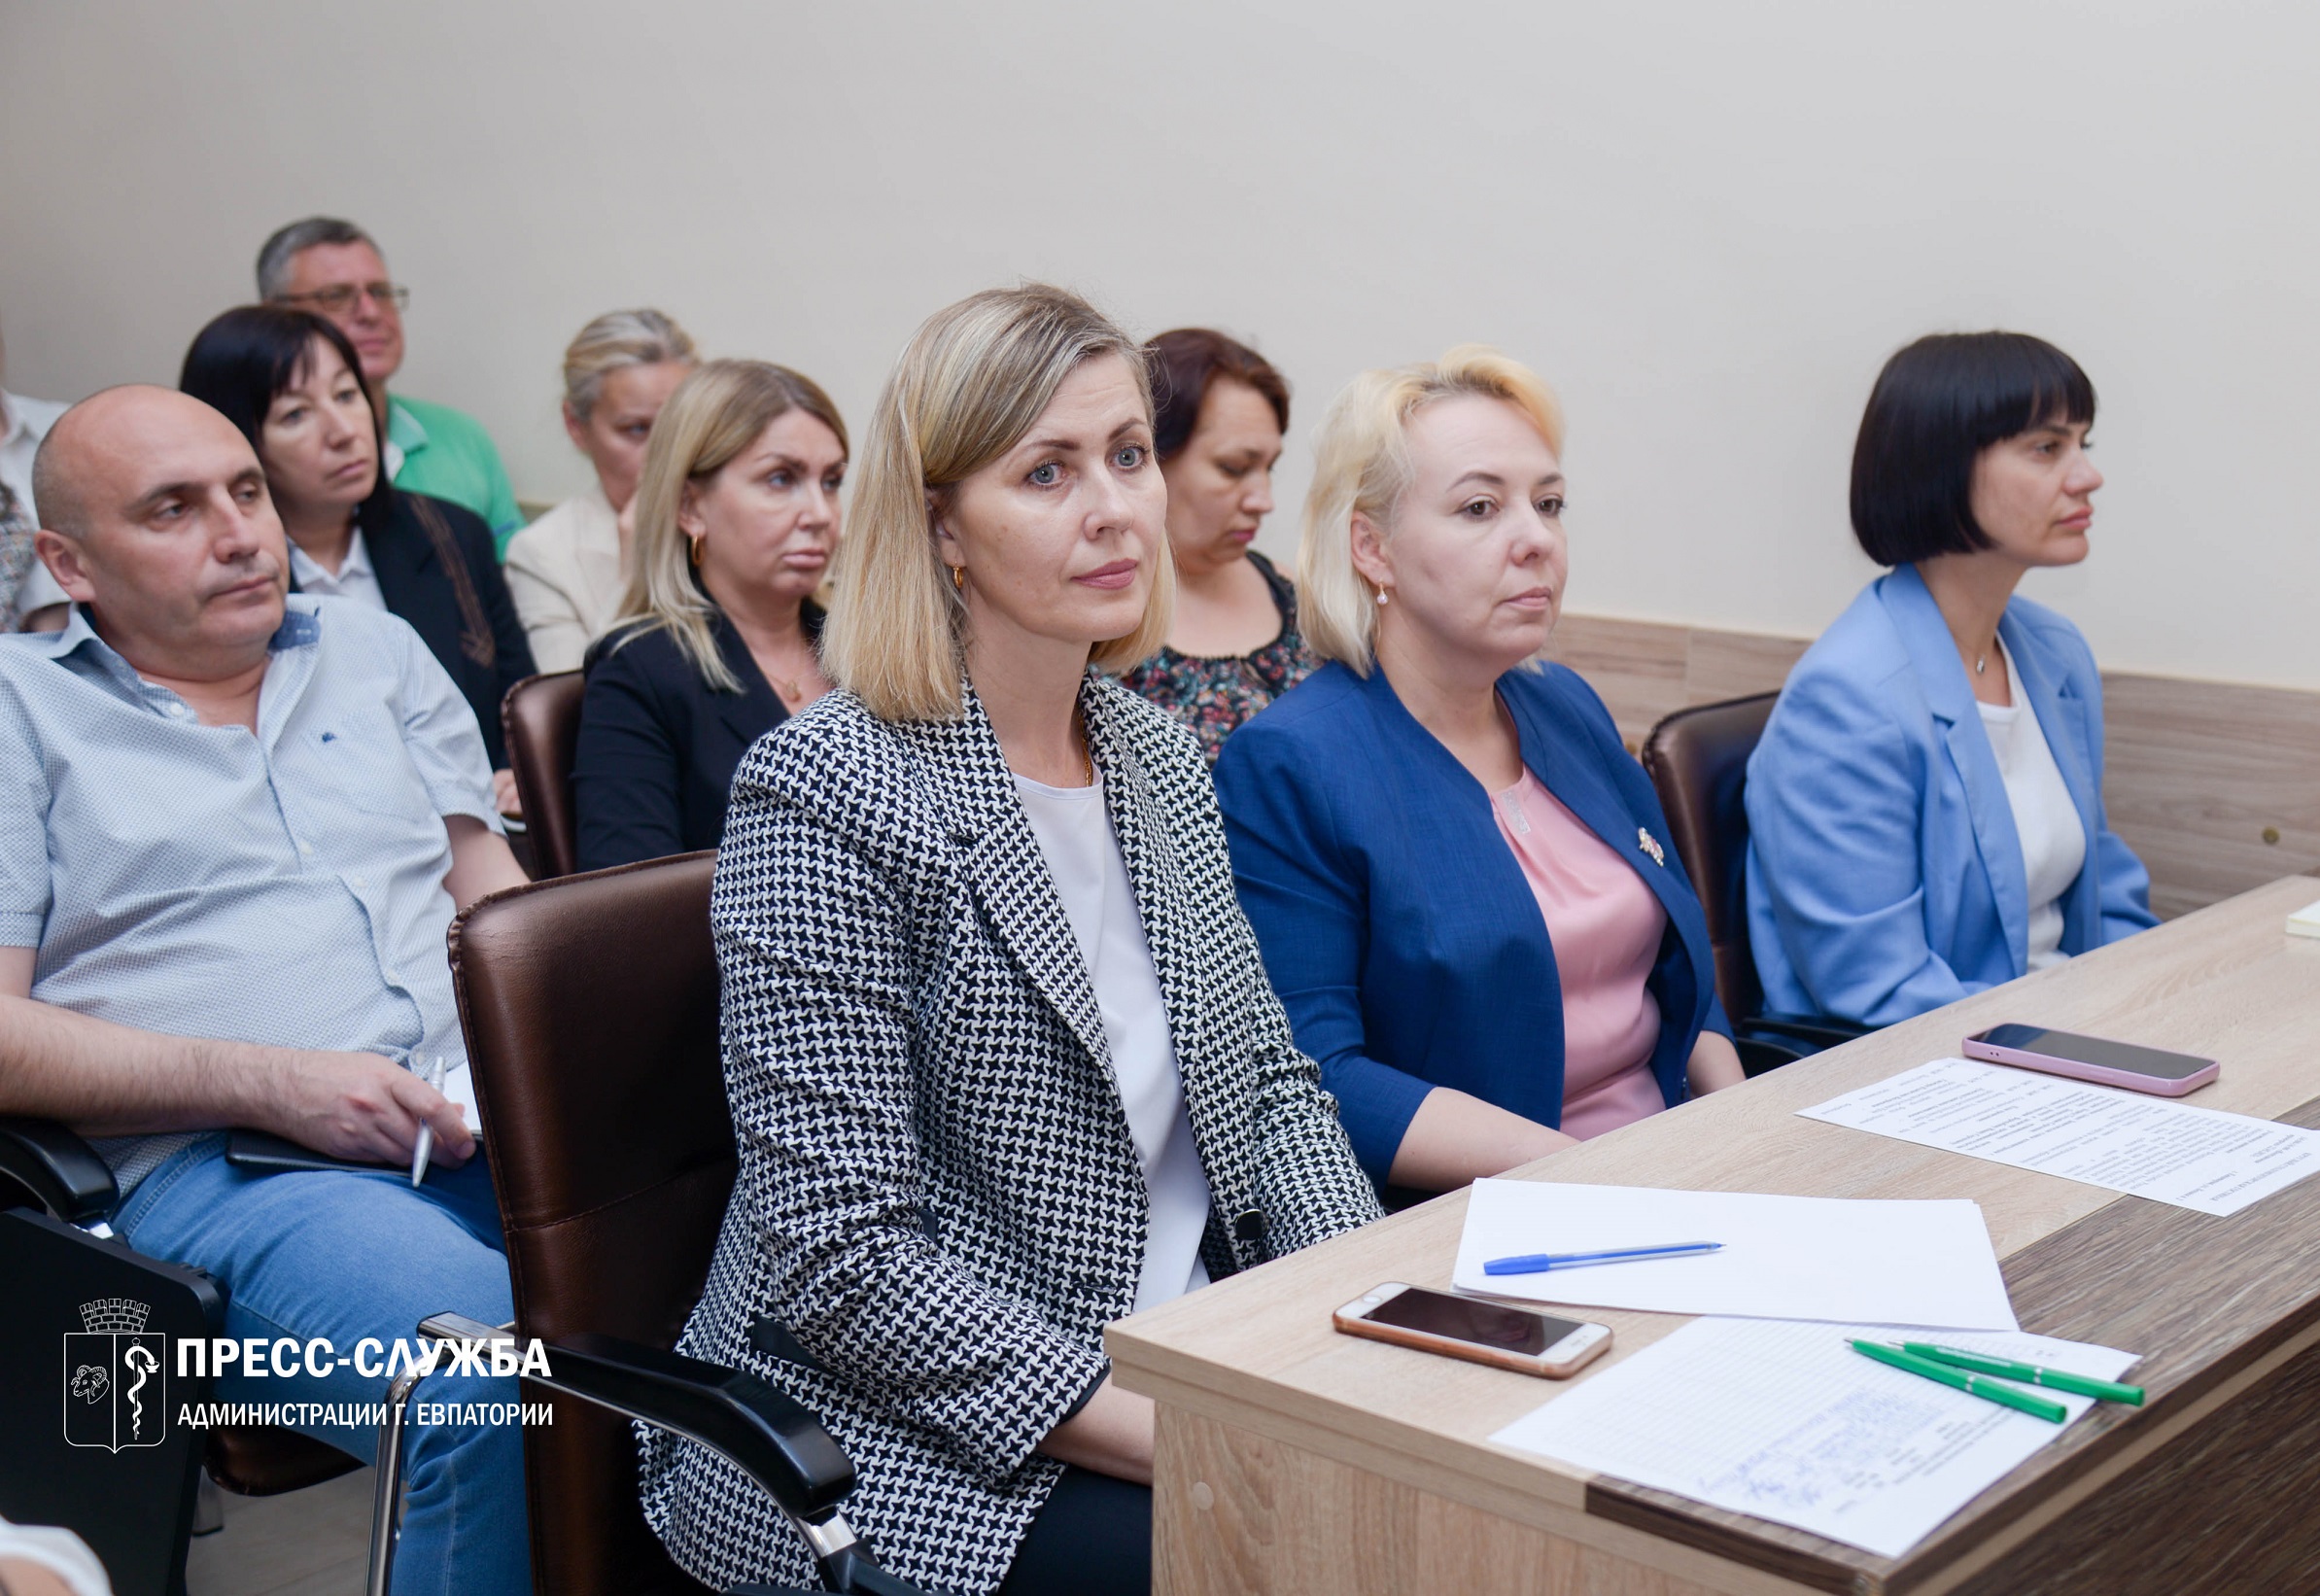 В Евпатории состоялся круглый стол по теме: «Внеплановая проверка»